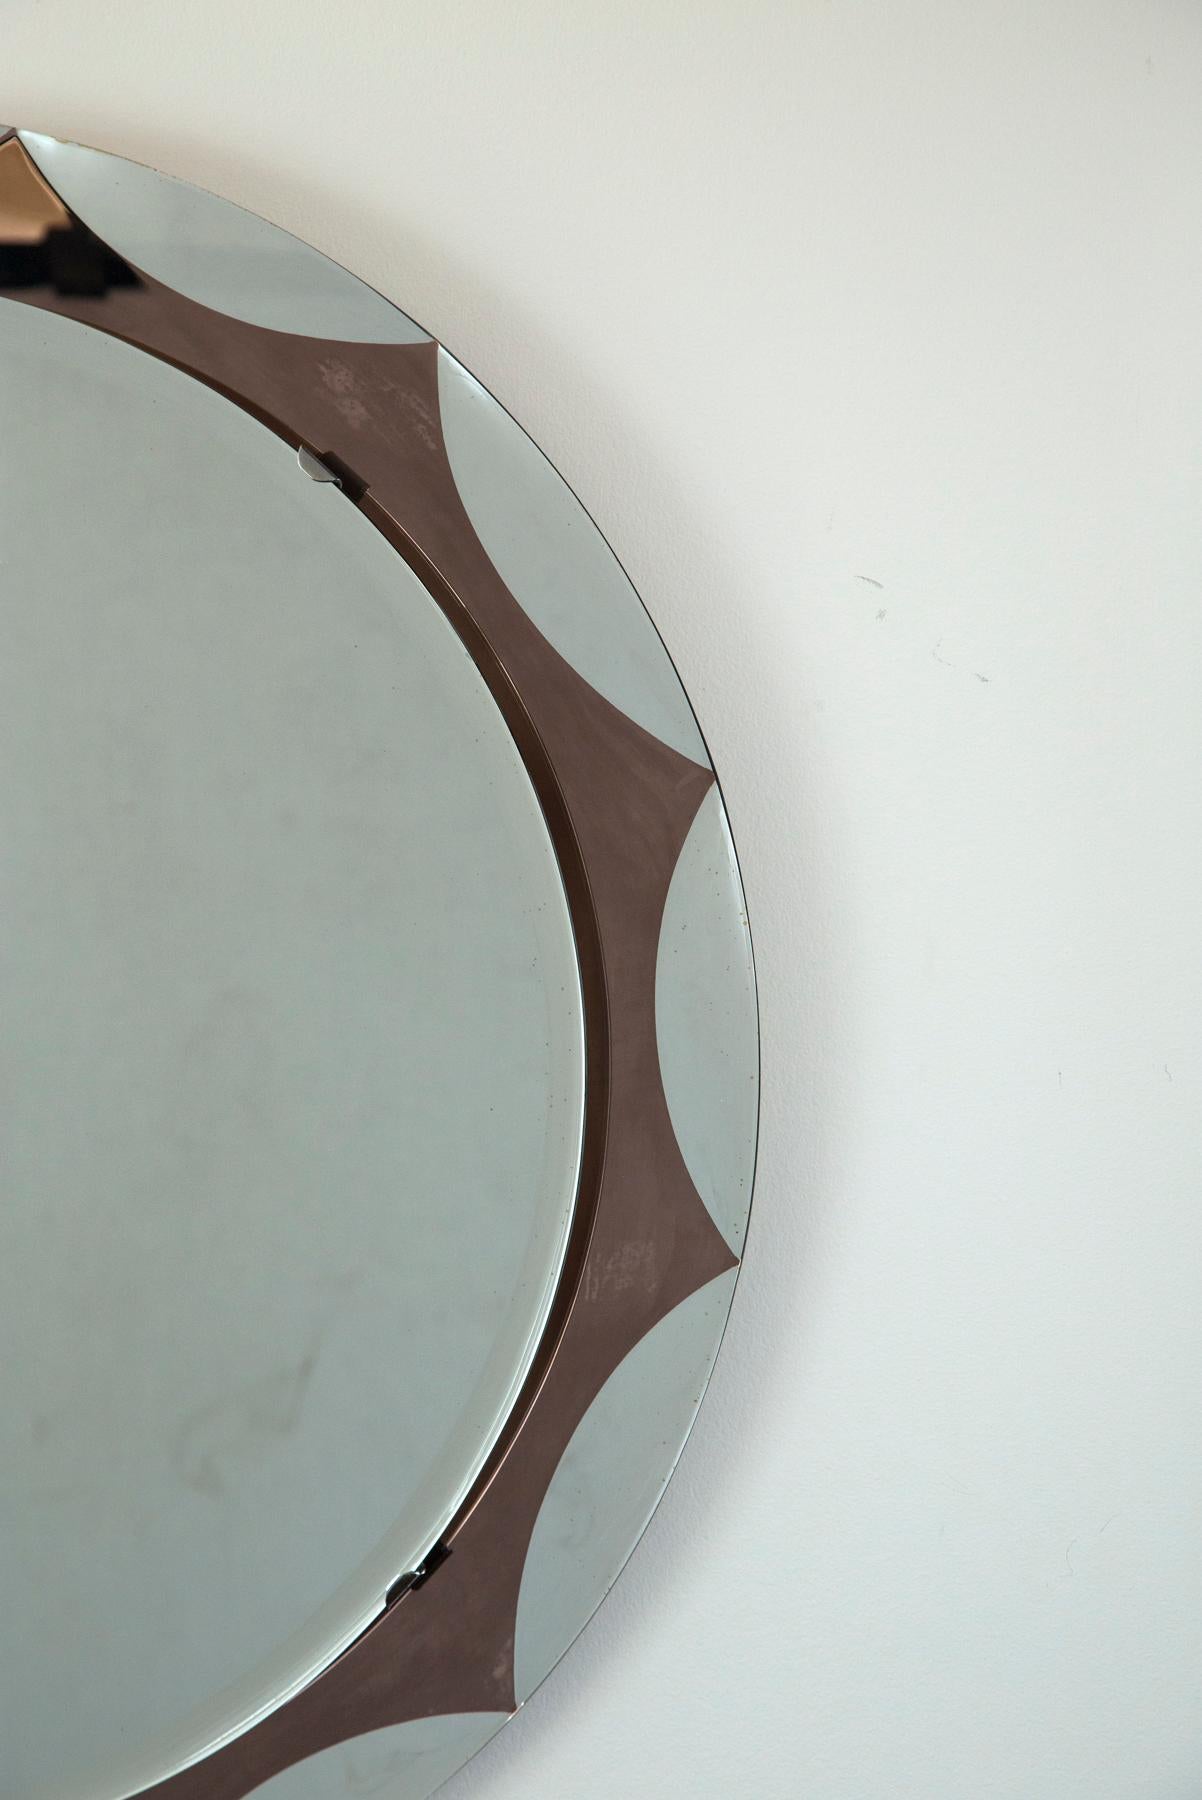 Schöner runder schwimmender Spiegel mit burgunderfarbenem Starburst (Wellenmuster), der mittlere schwimmende Spiegel ist abgeschrägt und mit Nickelklammern befestigt, abgebildet mit Originalaufkleber des Herstellers auf der Rückseite des